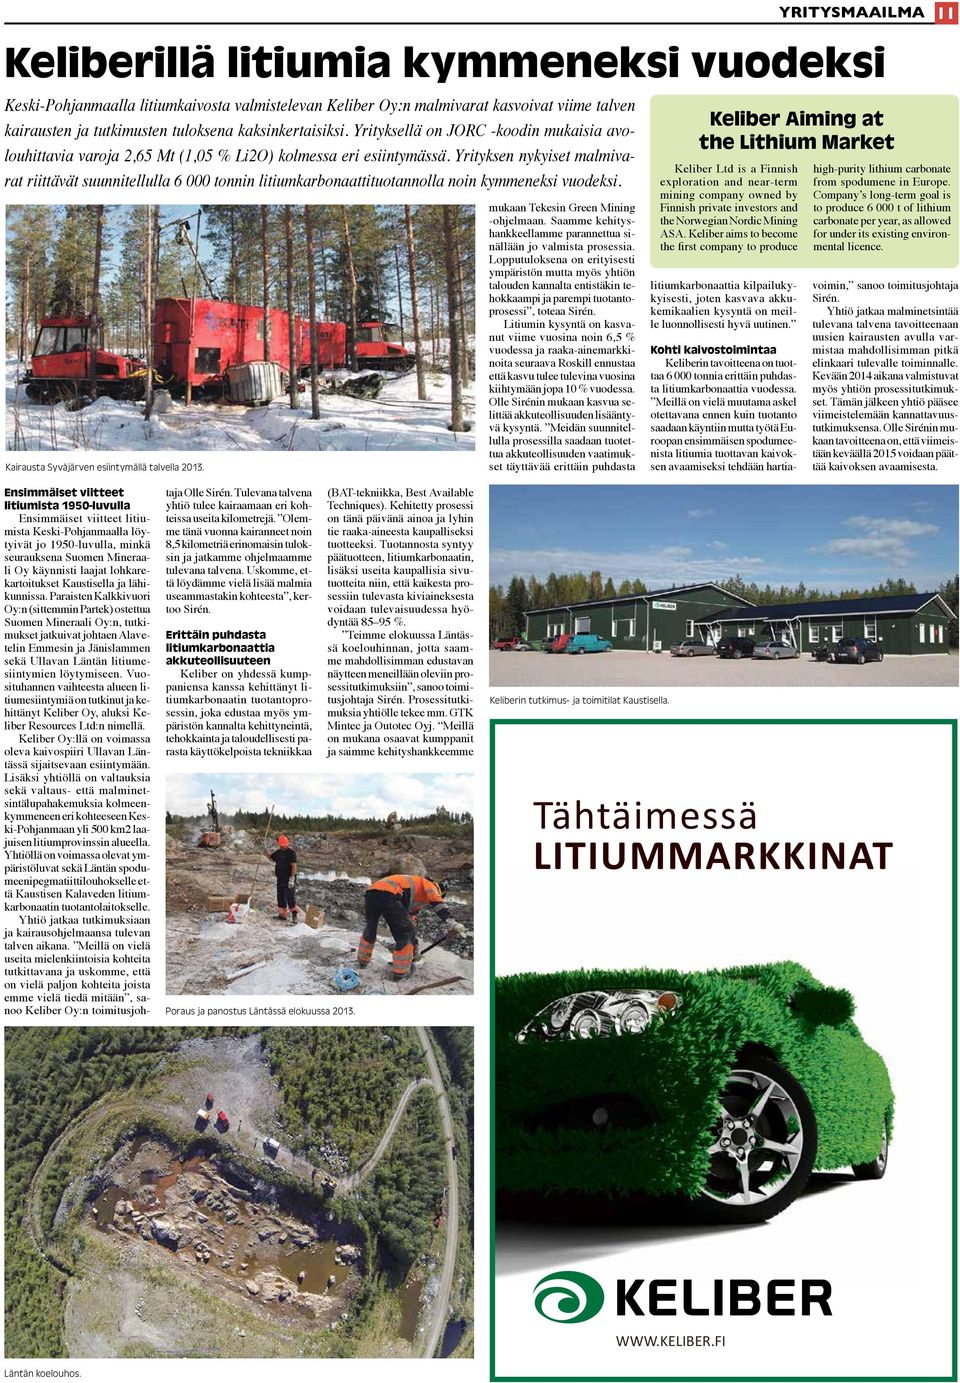 Yrityksen nykyiset malmivarat riittävät suunnitellulla 6 000 tonnin litiumkarbonaattituotannolla noin kymmeneksi vuodeksi. Kairausta Syväjärven esiintymällä talvella 2013.